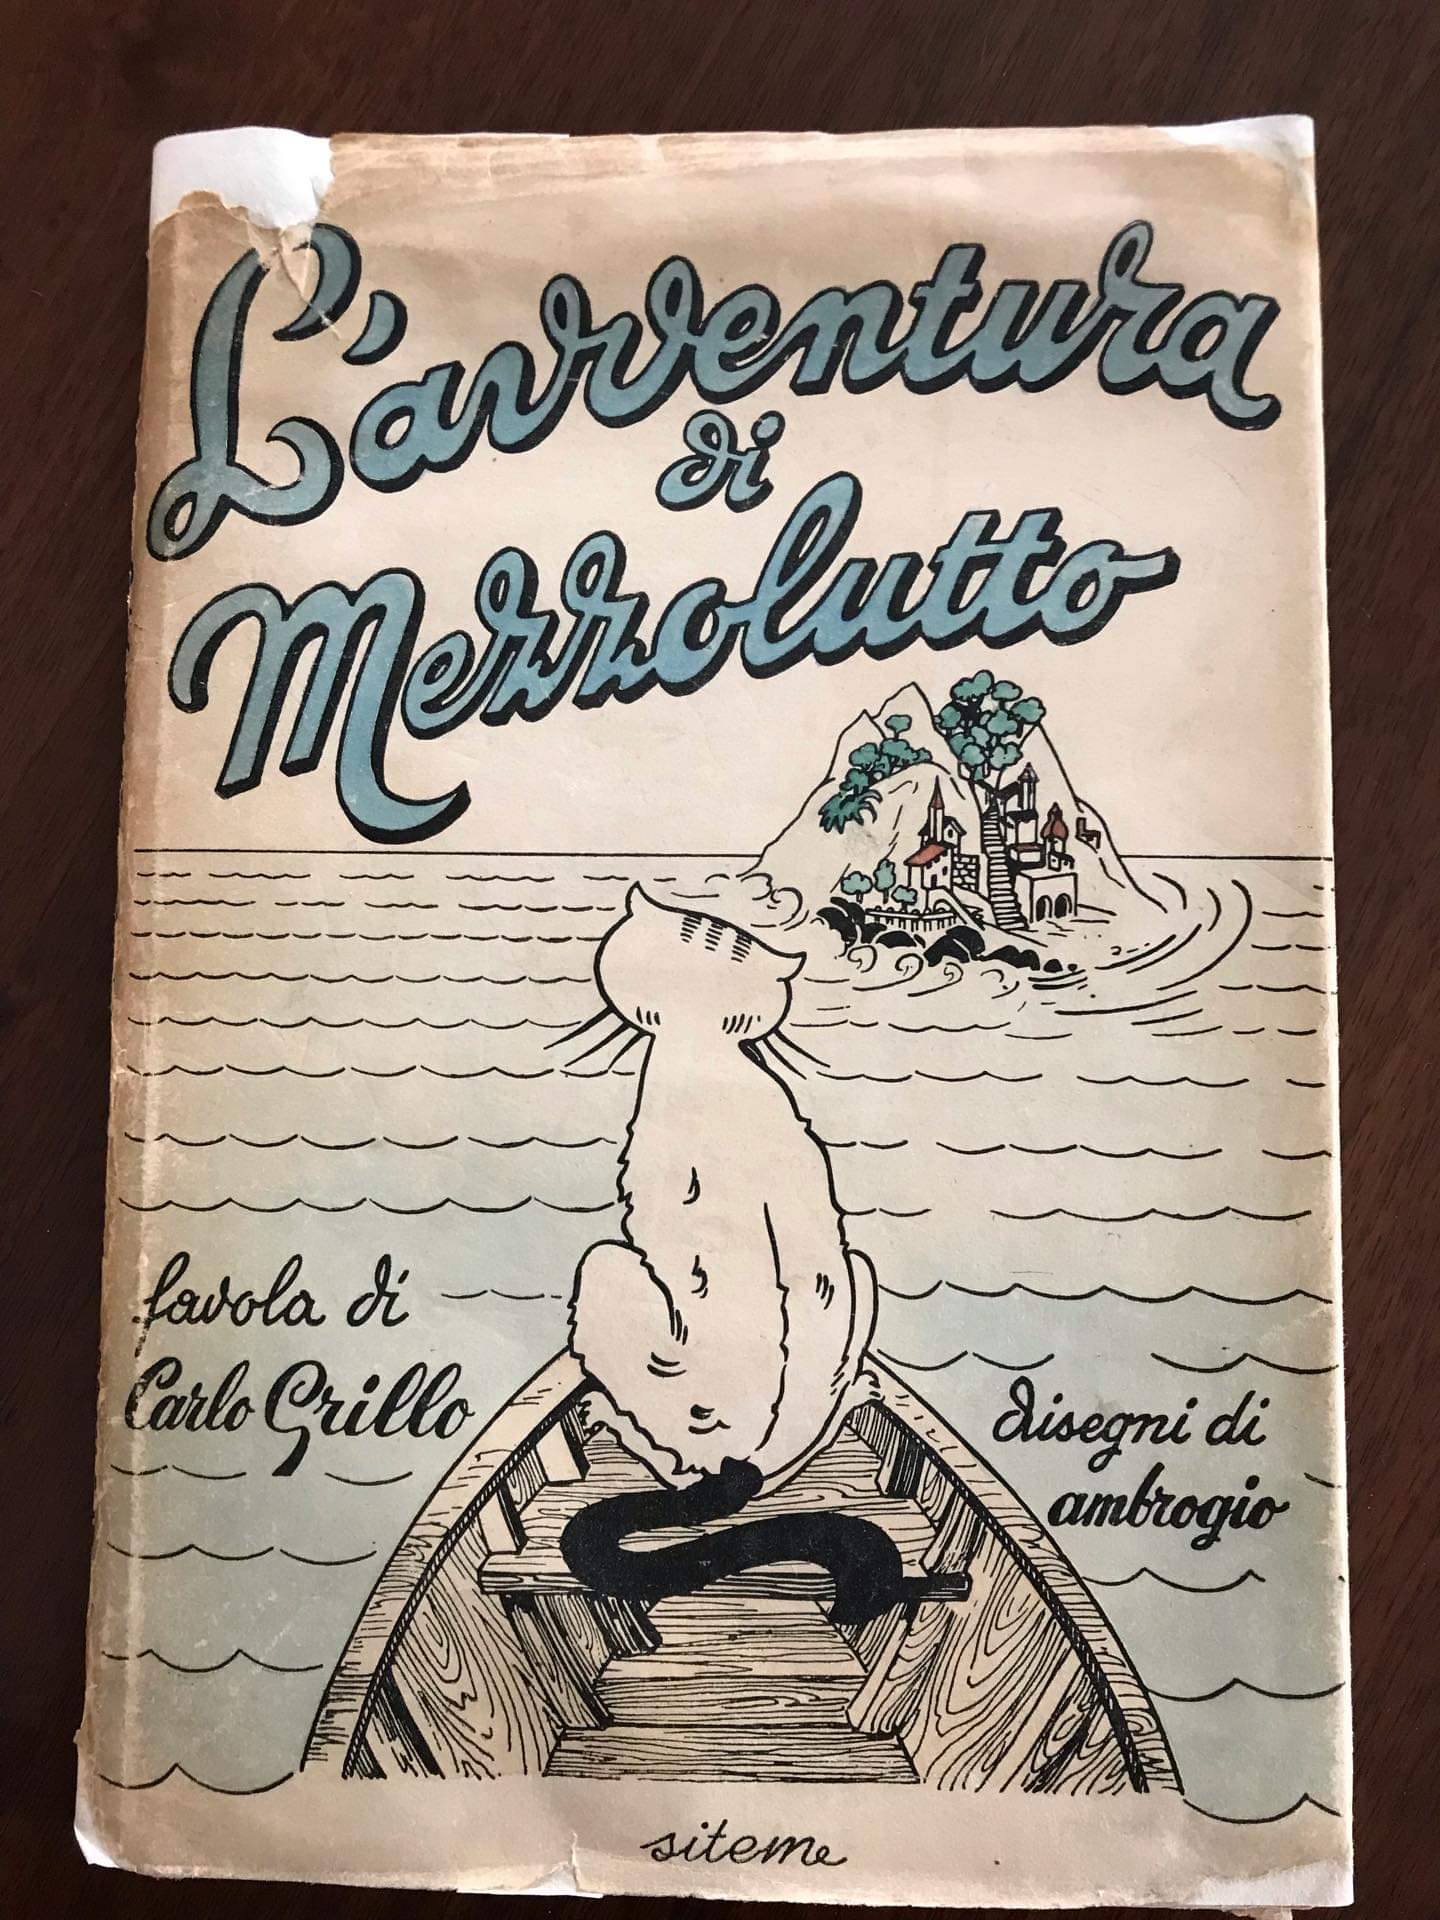 Che libro è “L’avventura di Mezzolutto” di Carlo Grillo? Nessuno ne ha mai sentito parlare!